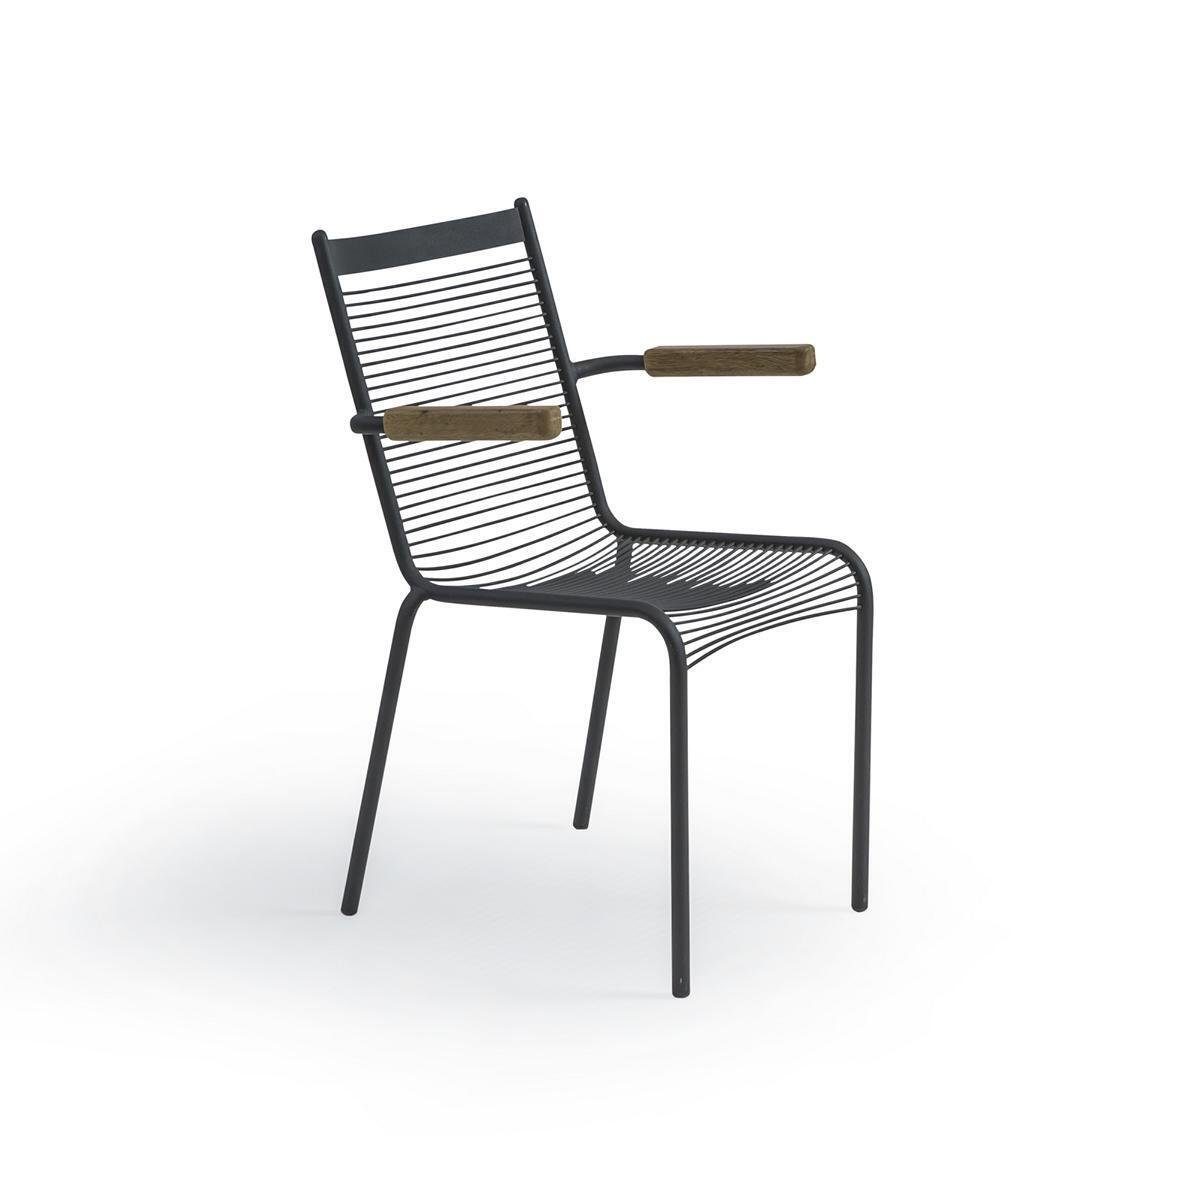 JVmoebel Armlehnstuhl Design Stuhl Neu Moderne Einrichtung Esszimmerstuhl Möbel Stühle, Made in Europa